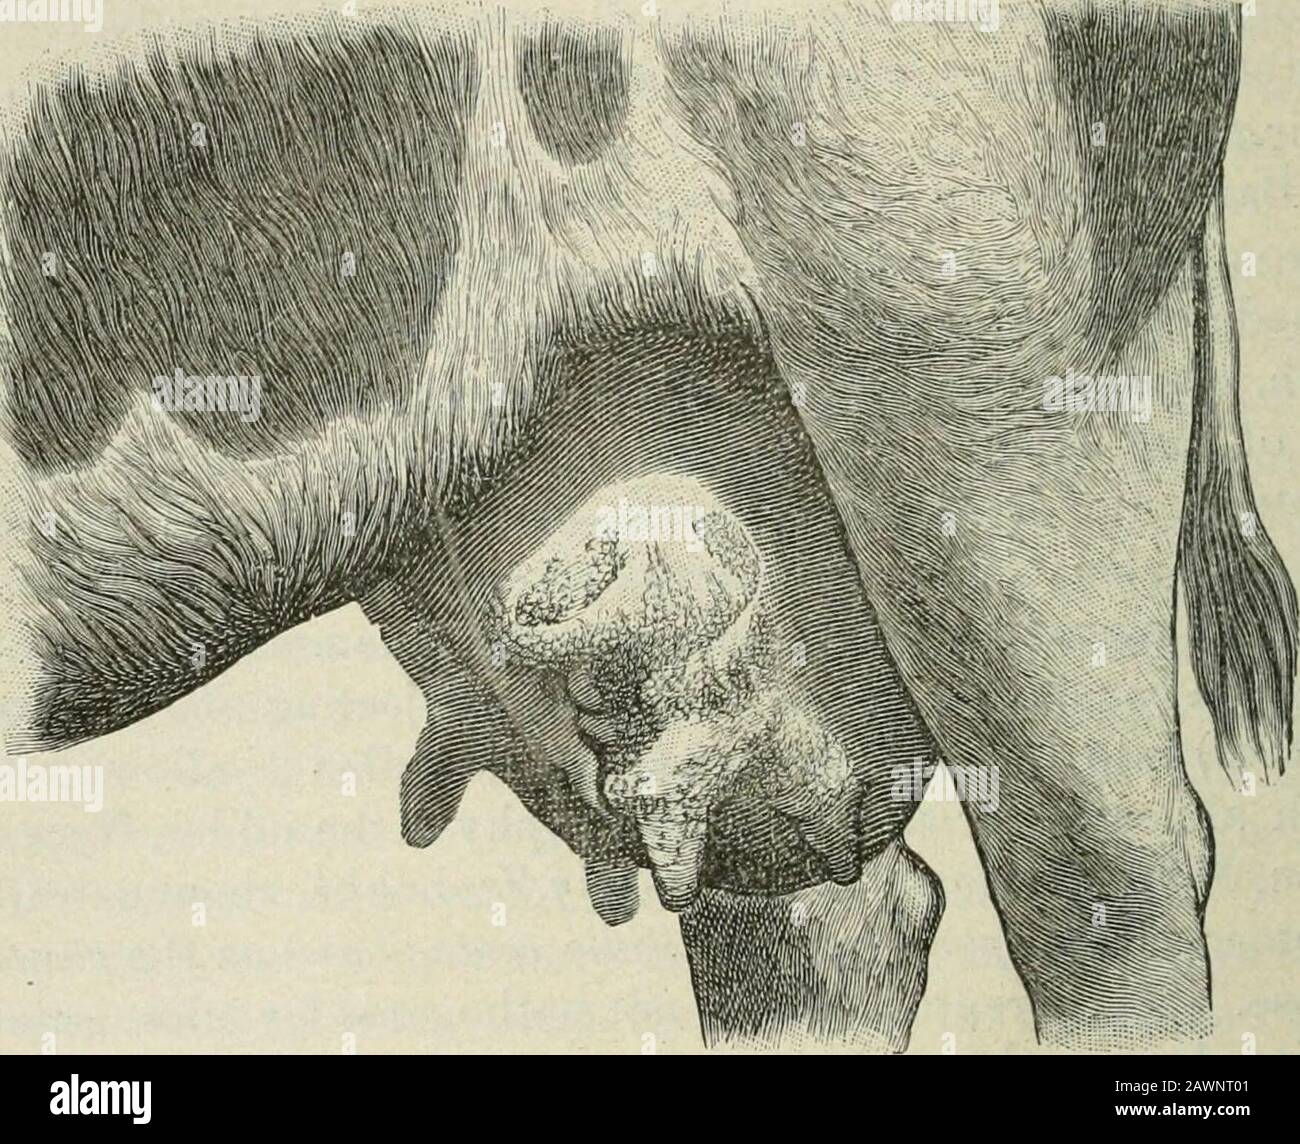 Manual de inspección de la carne . el nismo tiene el poder de producir en  la ubre una septicemia que se propaga y causa la muerte del animal conhiu  unos días. Los